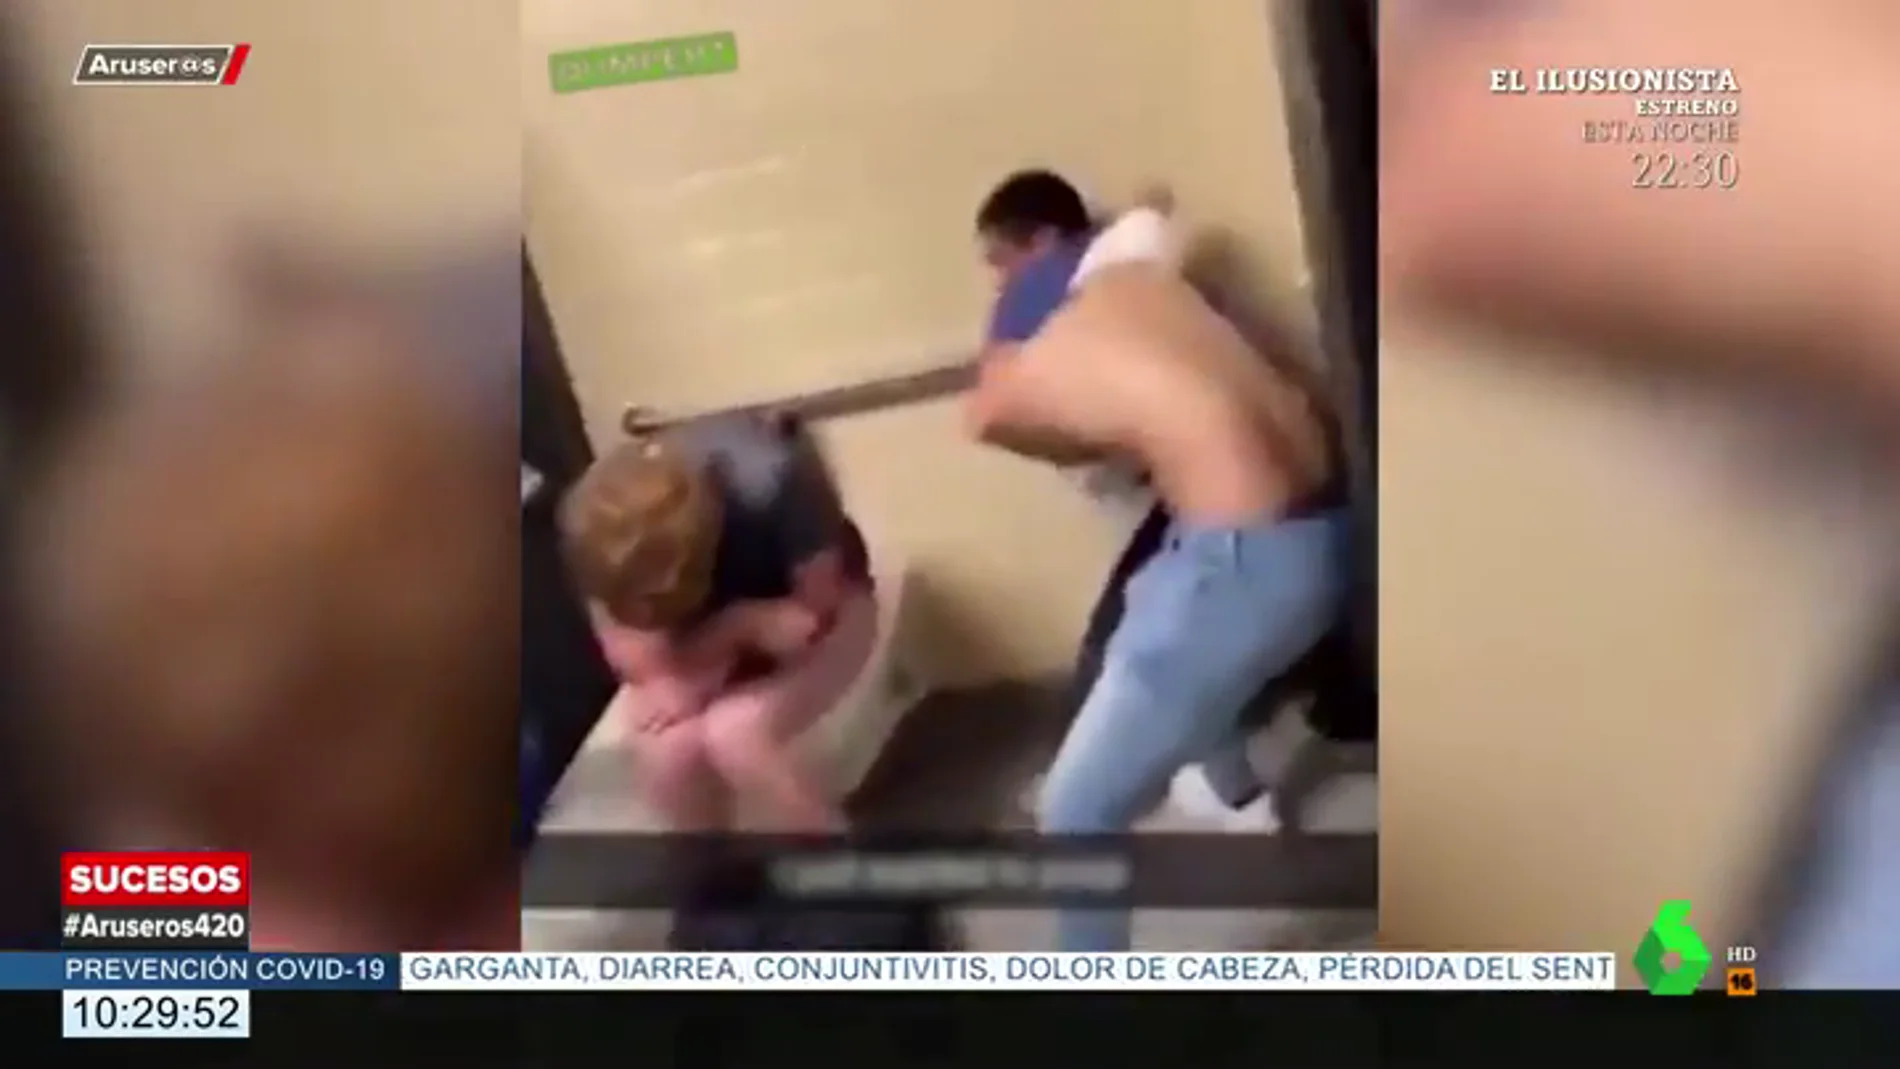 La pelea absurda en unos baños públicos que acaba con un final inesperado